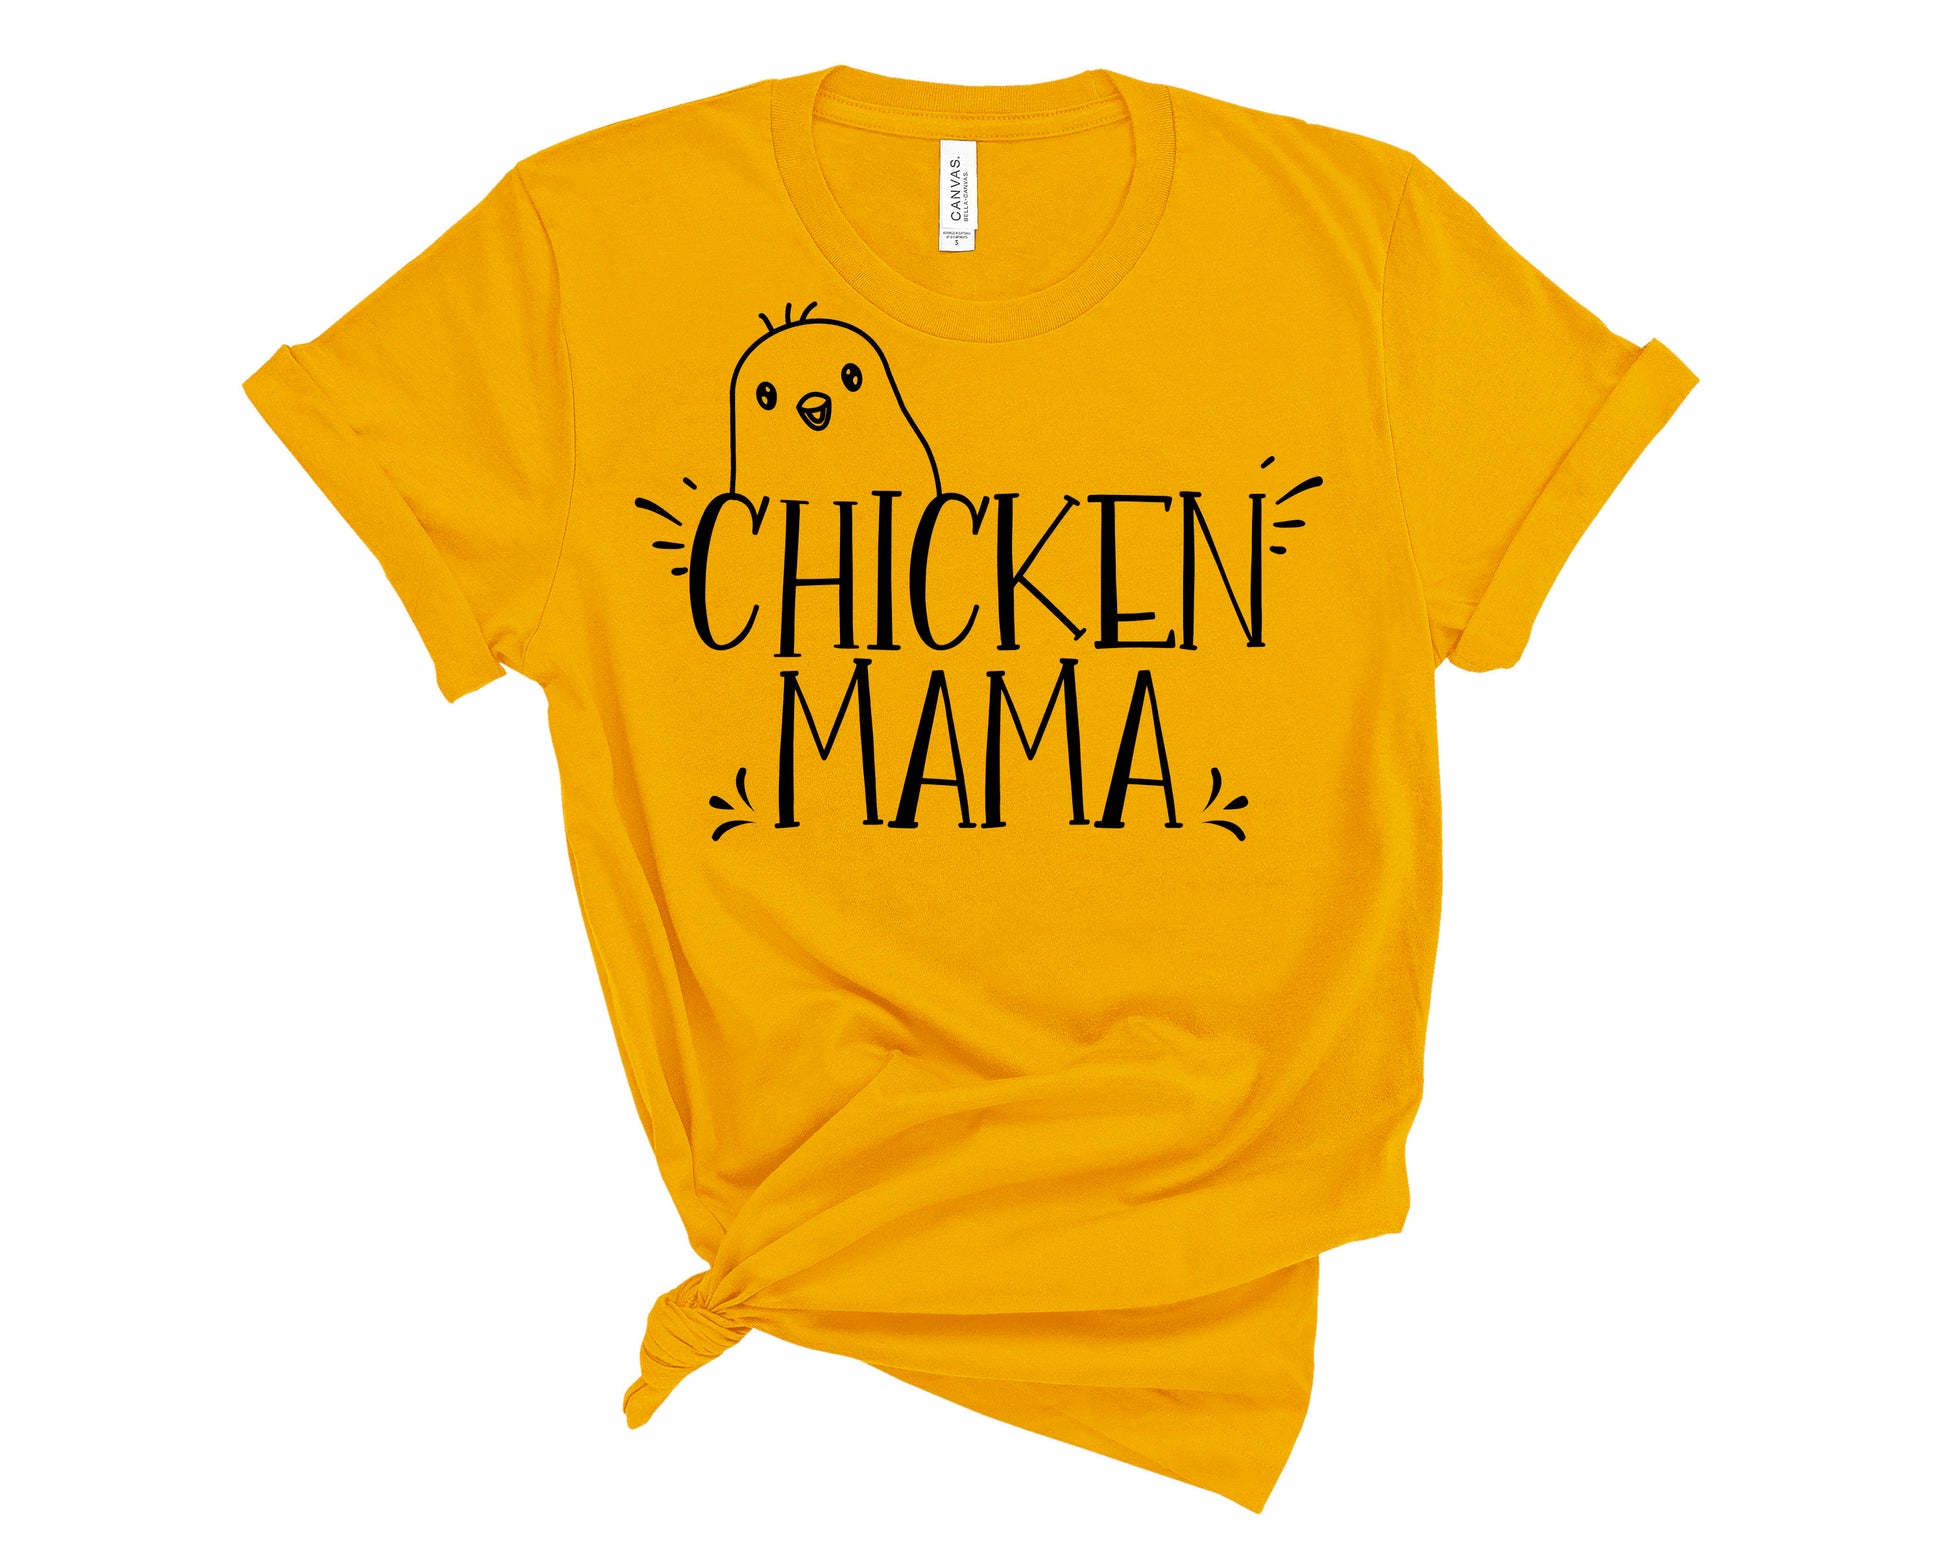 Chicken Mama shirt